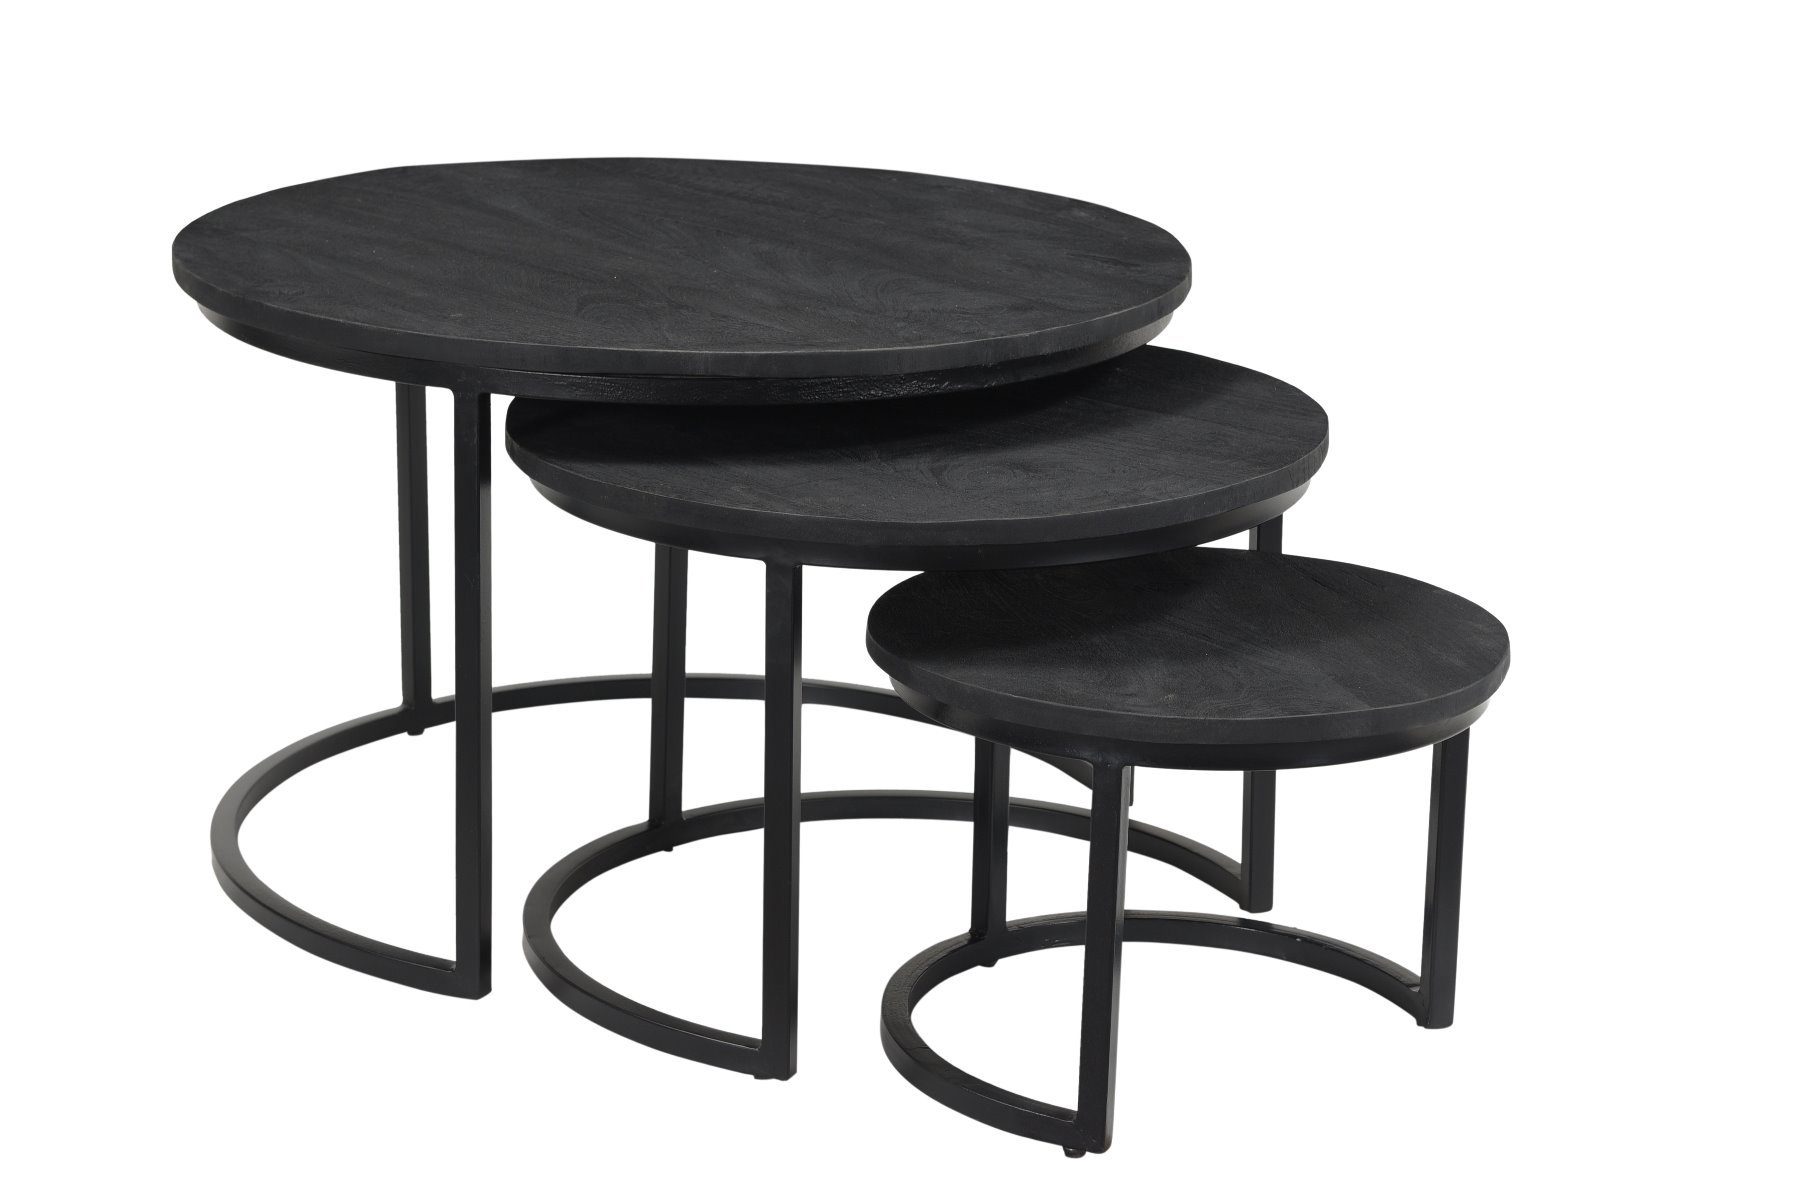 I Catchers Couchtisch Couchtisch Set Of 3 Tables Black